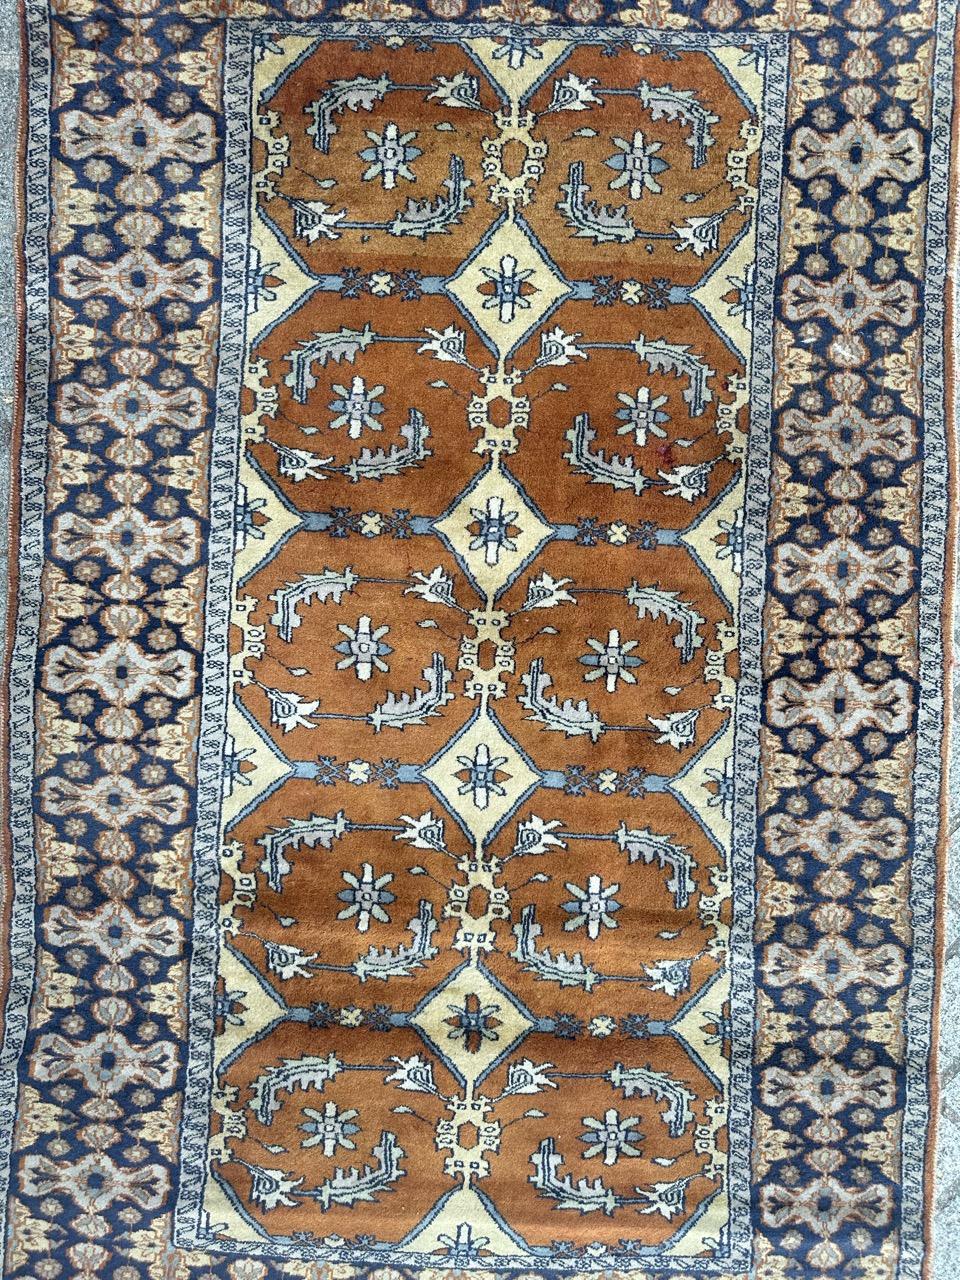 Hübscher pakistanischer Teppich aus der Mitte des Jahrhunderts mit einem floralen und stilisierten persischen Design und schönen Farben mit einem orangefarbenen Feld, gelb, blau, marineblau und grau, vollständig und fein handgeknüpft mit Wolle auf